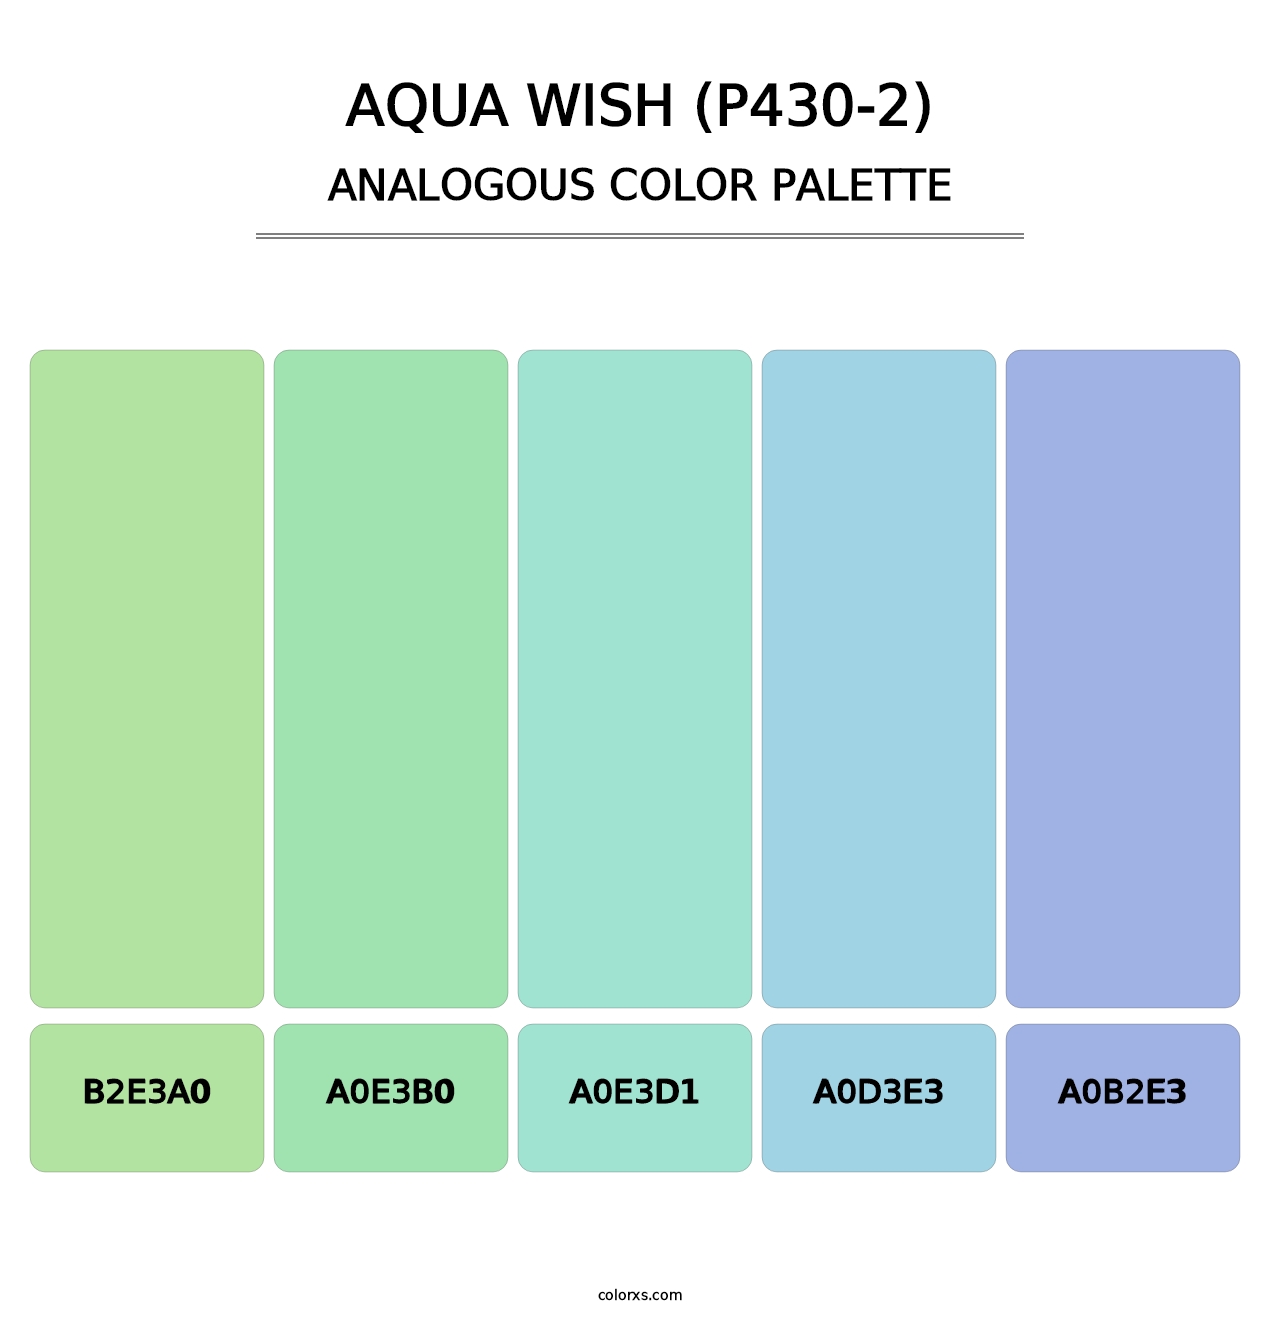 Aqua Wish (P430-2) - Analogous Color Palette